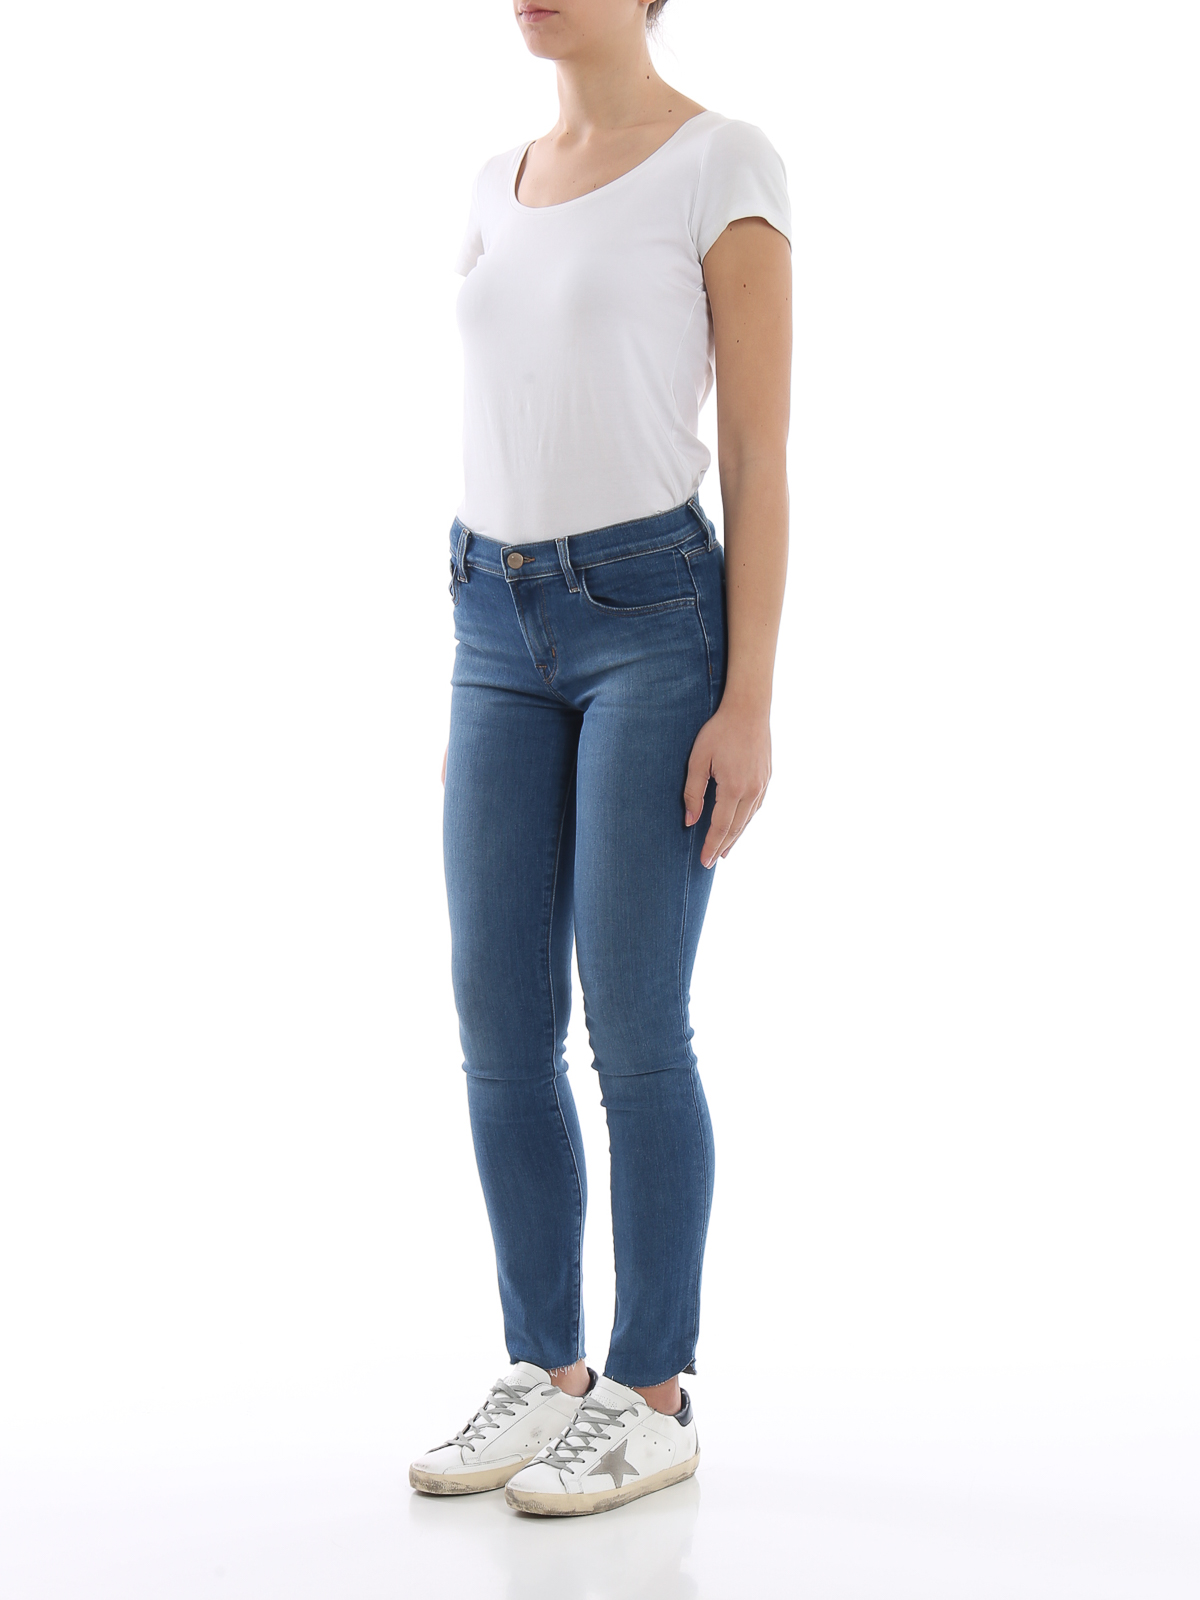 Bonde fortryde replika Skinny jeans J Brand - 811 skinny jeans - JB001757RADIATE